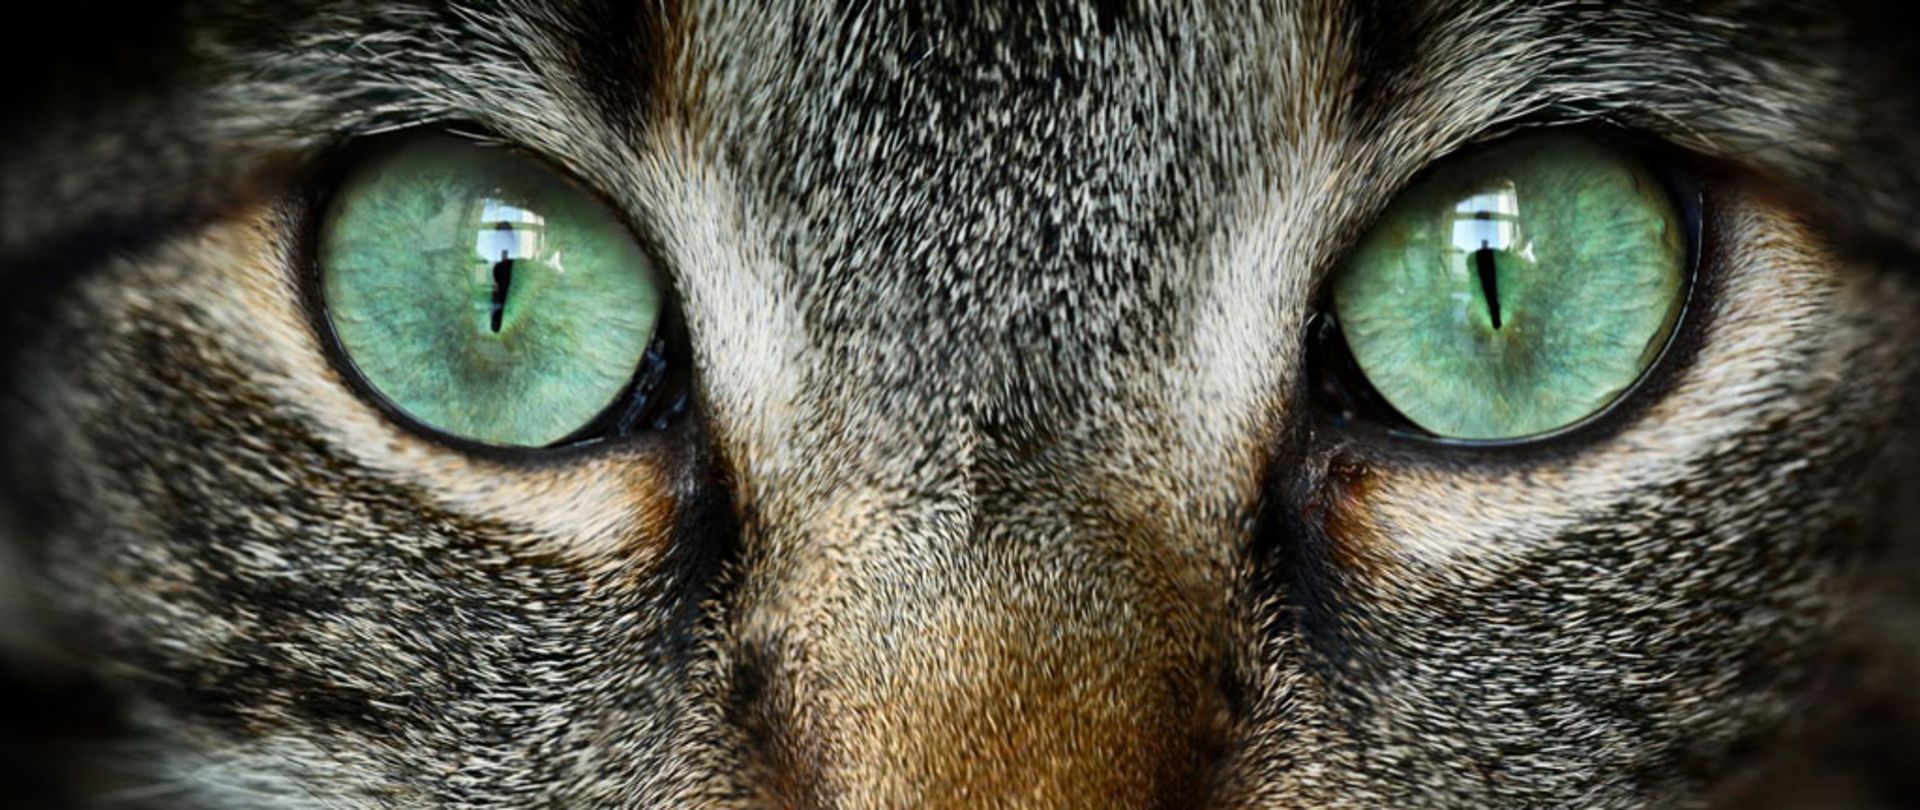 مرجع متخصصين ايران نگاه از چشم گربه